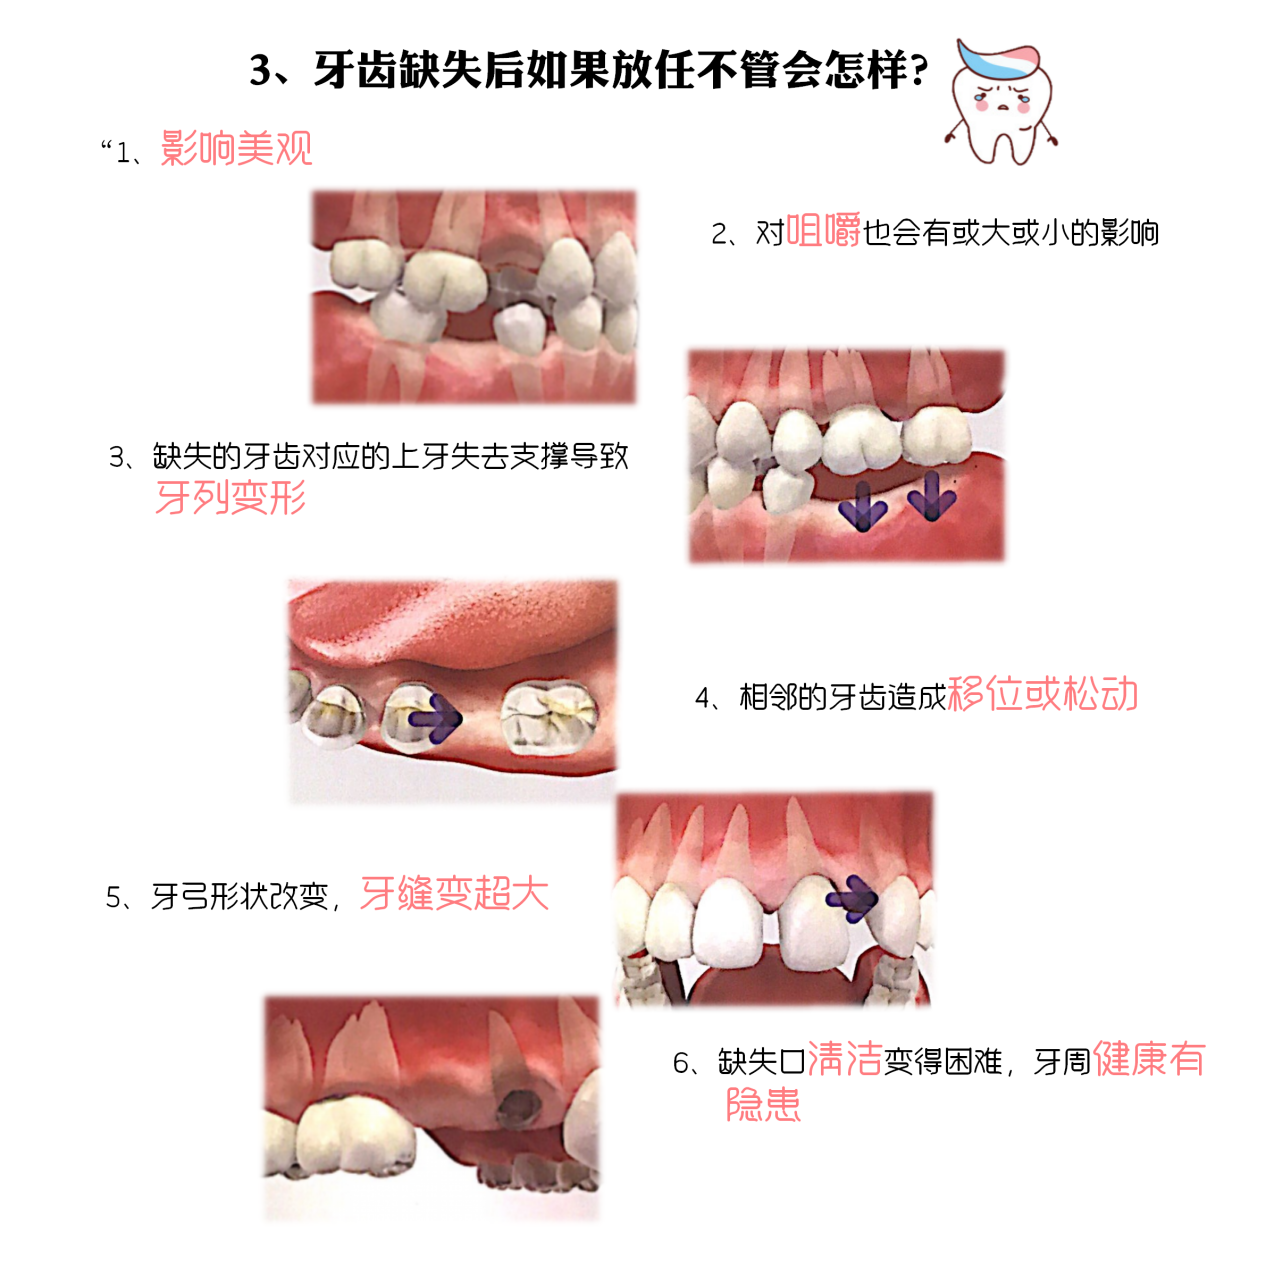 压低磨牙用腭侧种植支抗植入术